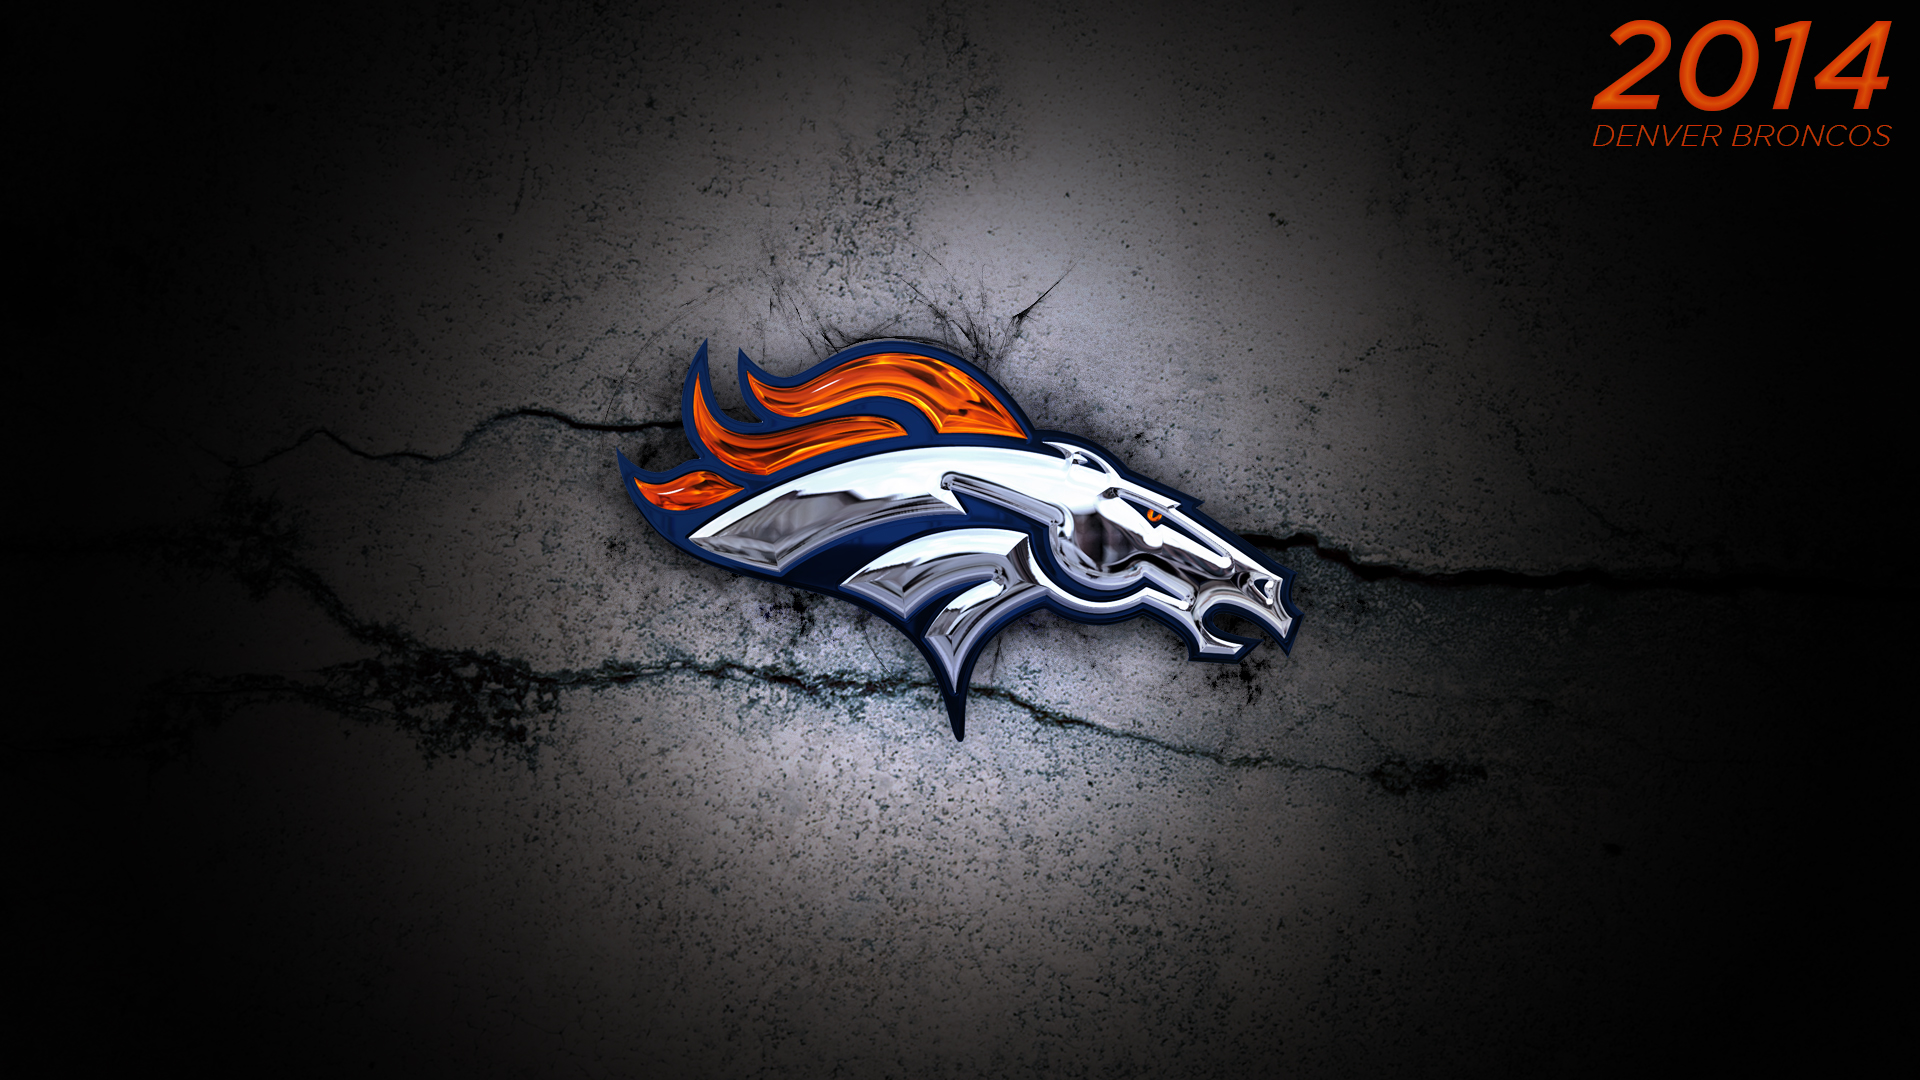 2014 Denver Broncos Wallpaper by DenverSportsWalls on